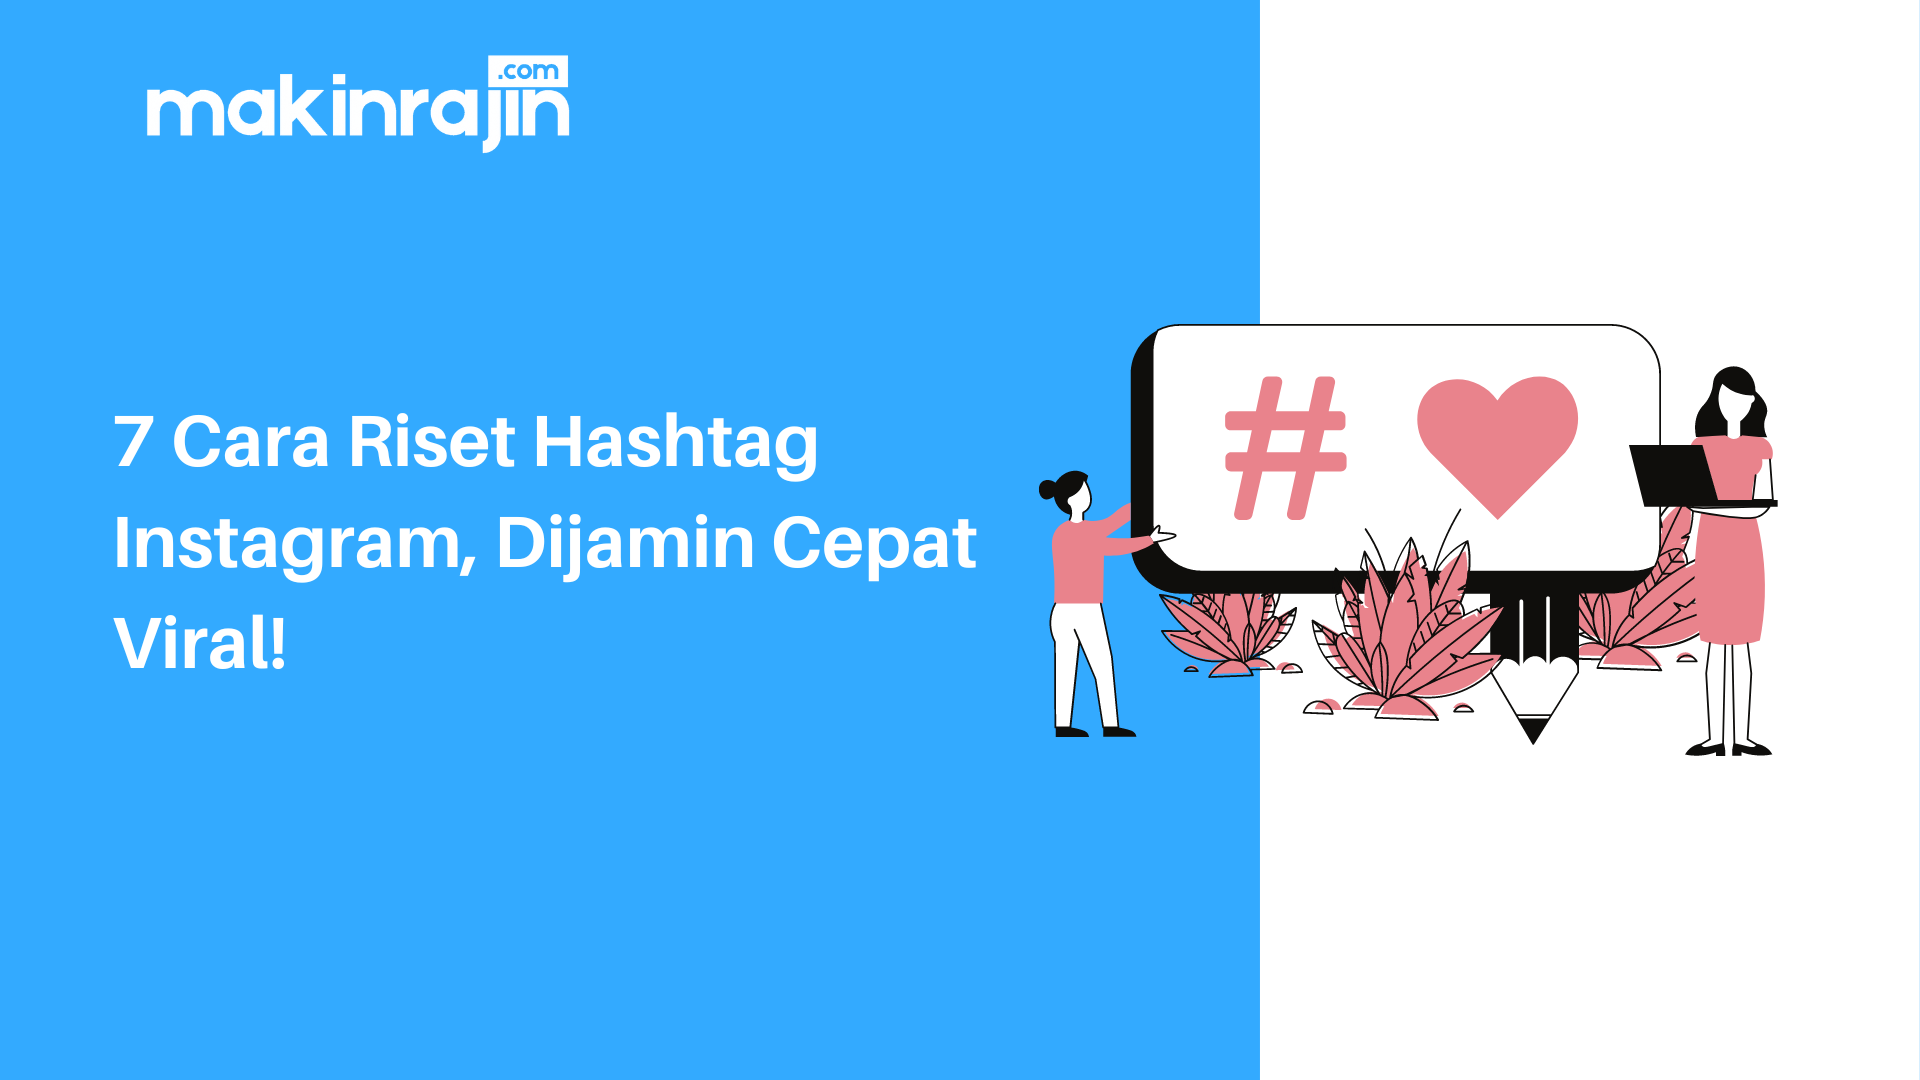 7 Cara Riset Hashtag Instagram, Dijamin Cepat Viral!